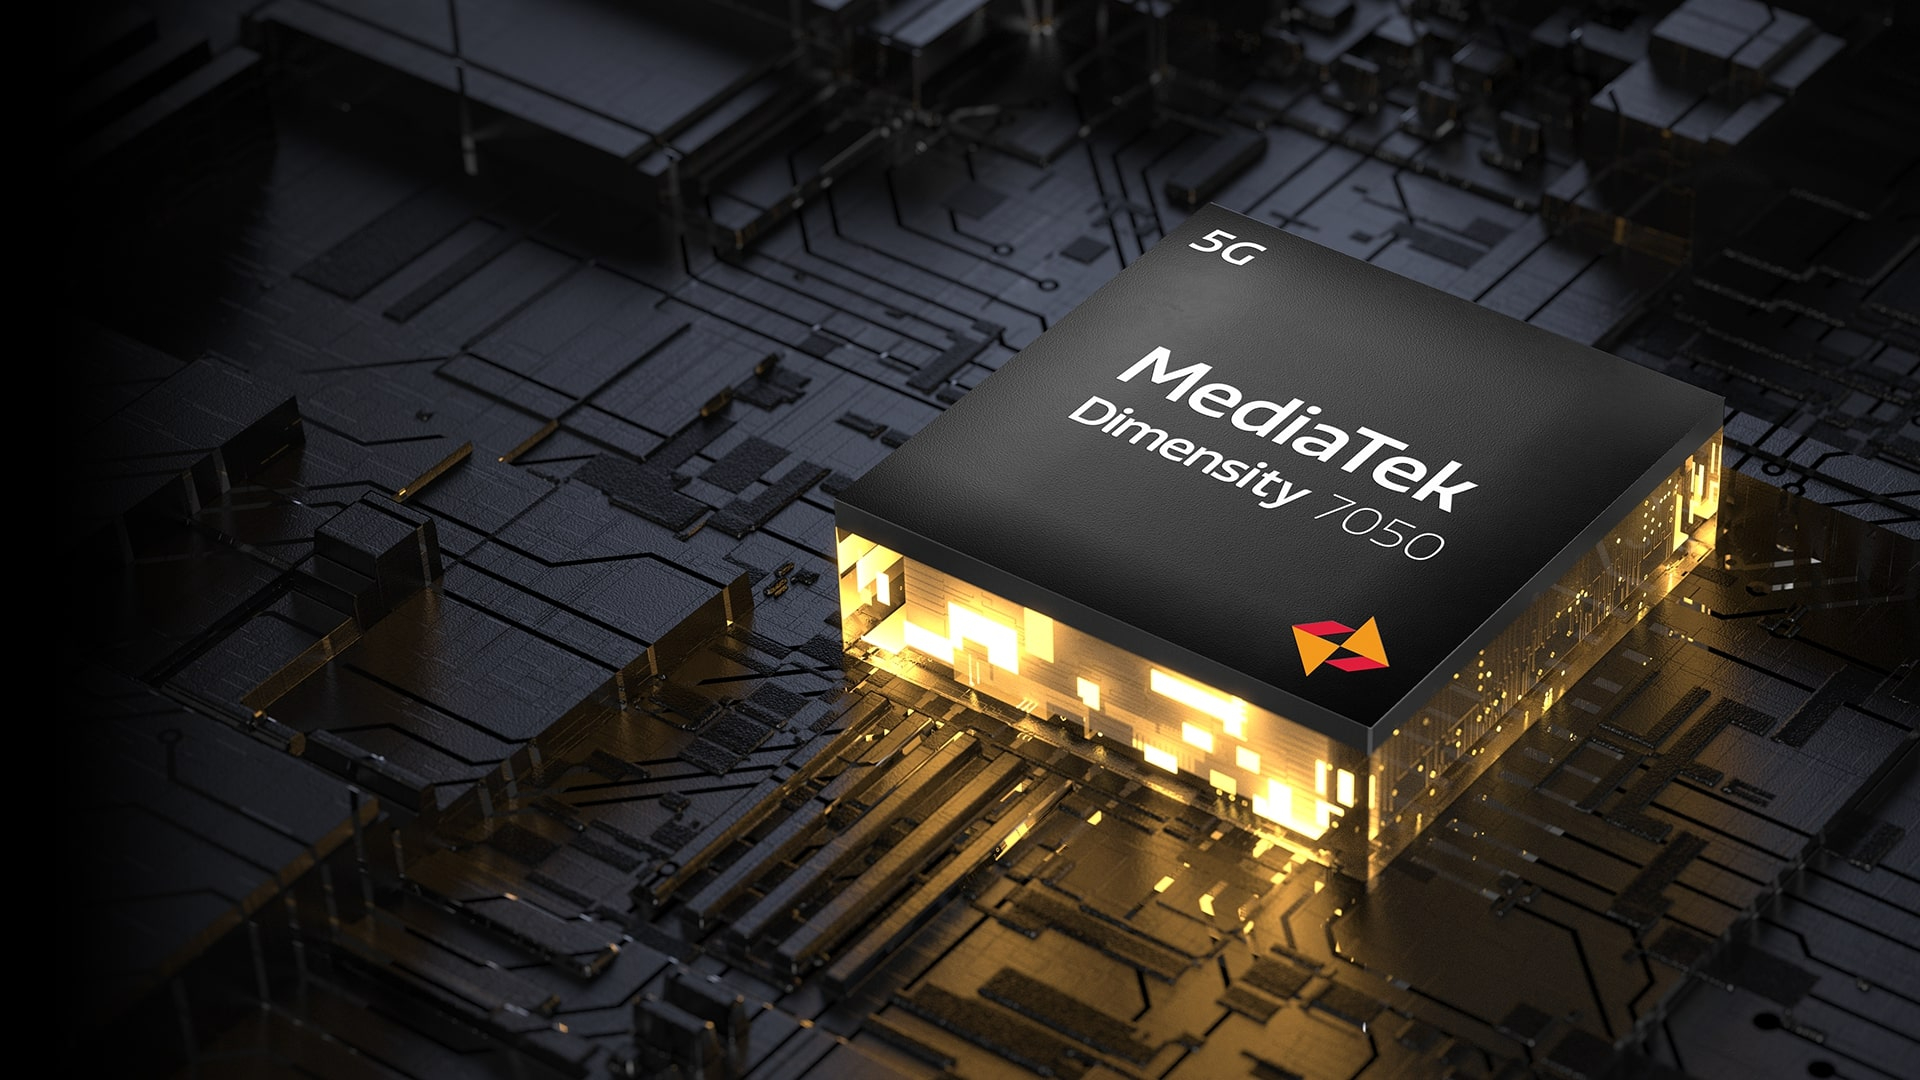 Promotional poster for the MediaTek Dimensity 7050 chipset